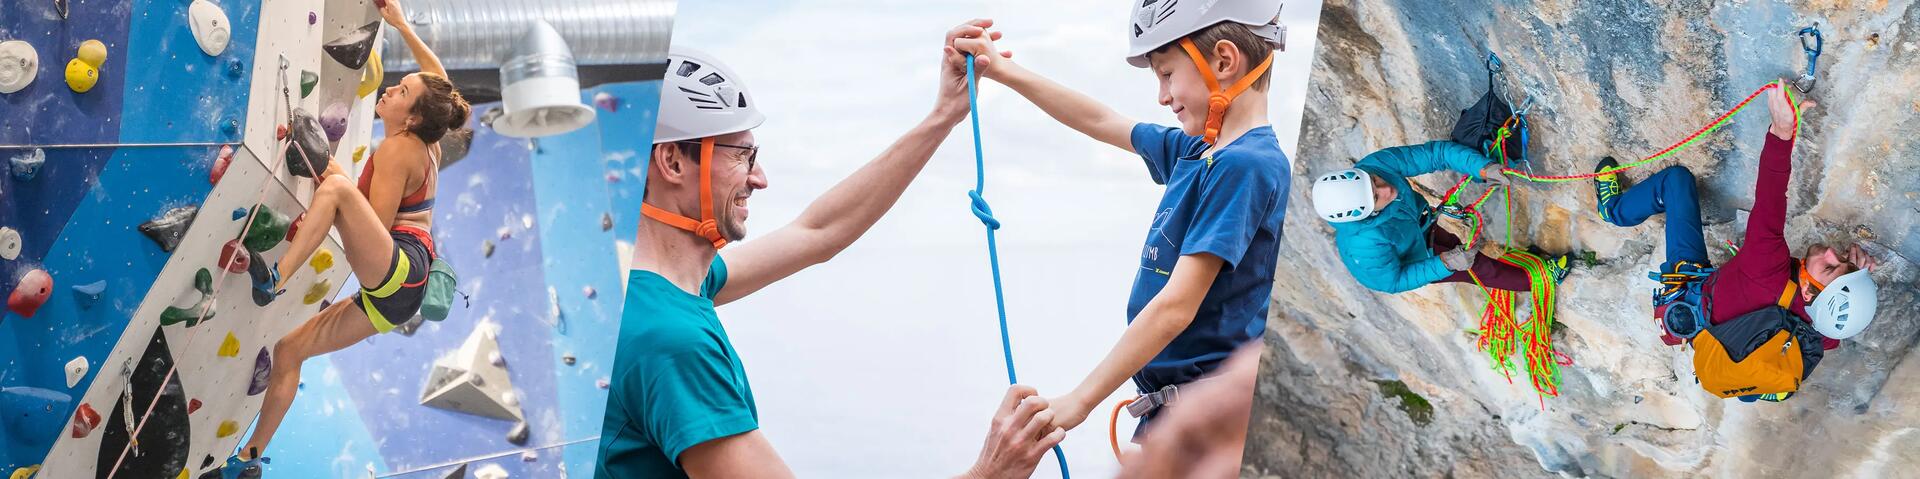 Klettern für Anfänger & Kinder: So gelingt der Einstieg